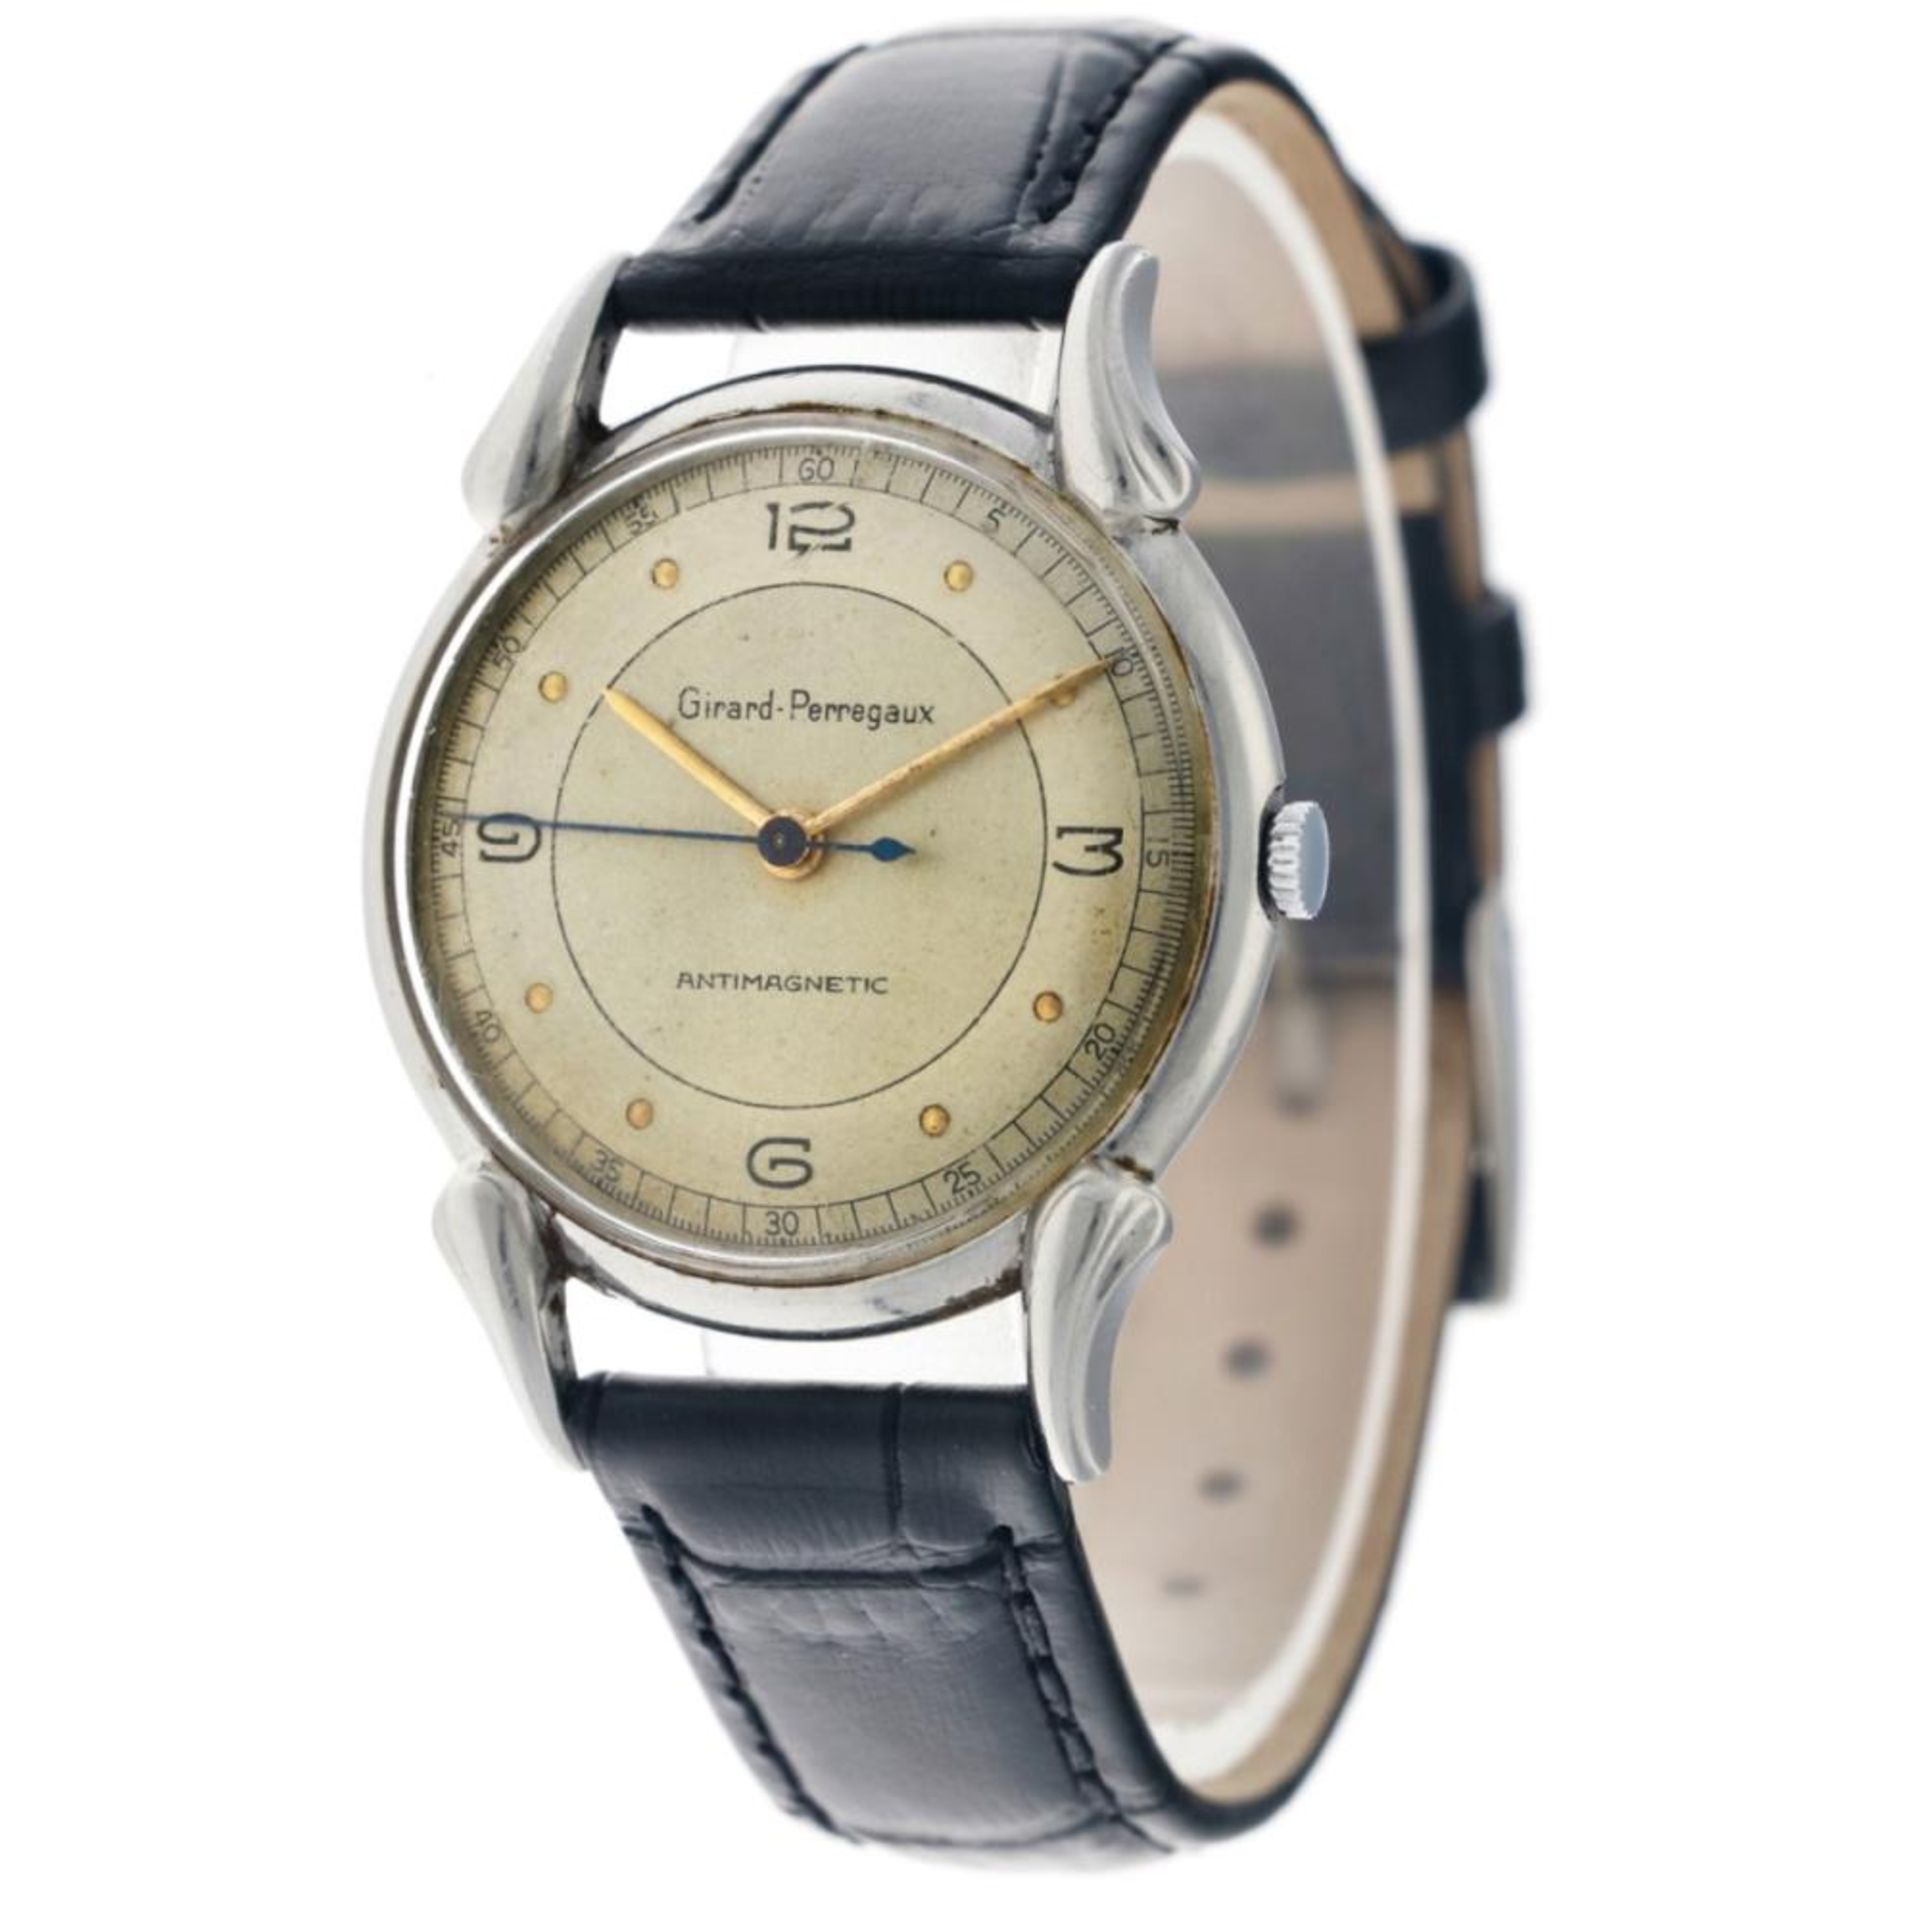 Girard-Perregaux Dogleg 494779 - Men's watch - approx. 1950. - Image 3 of 14